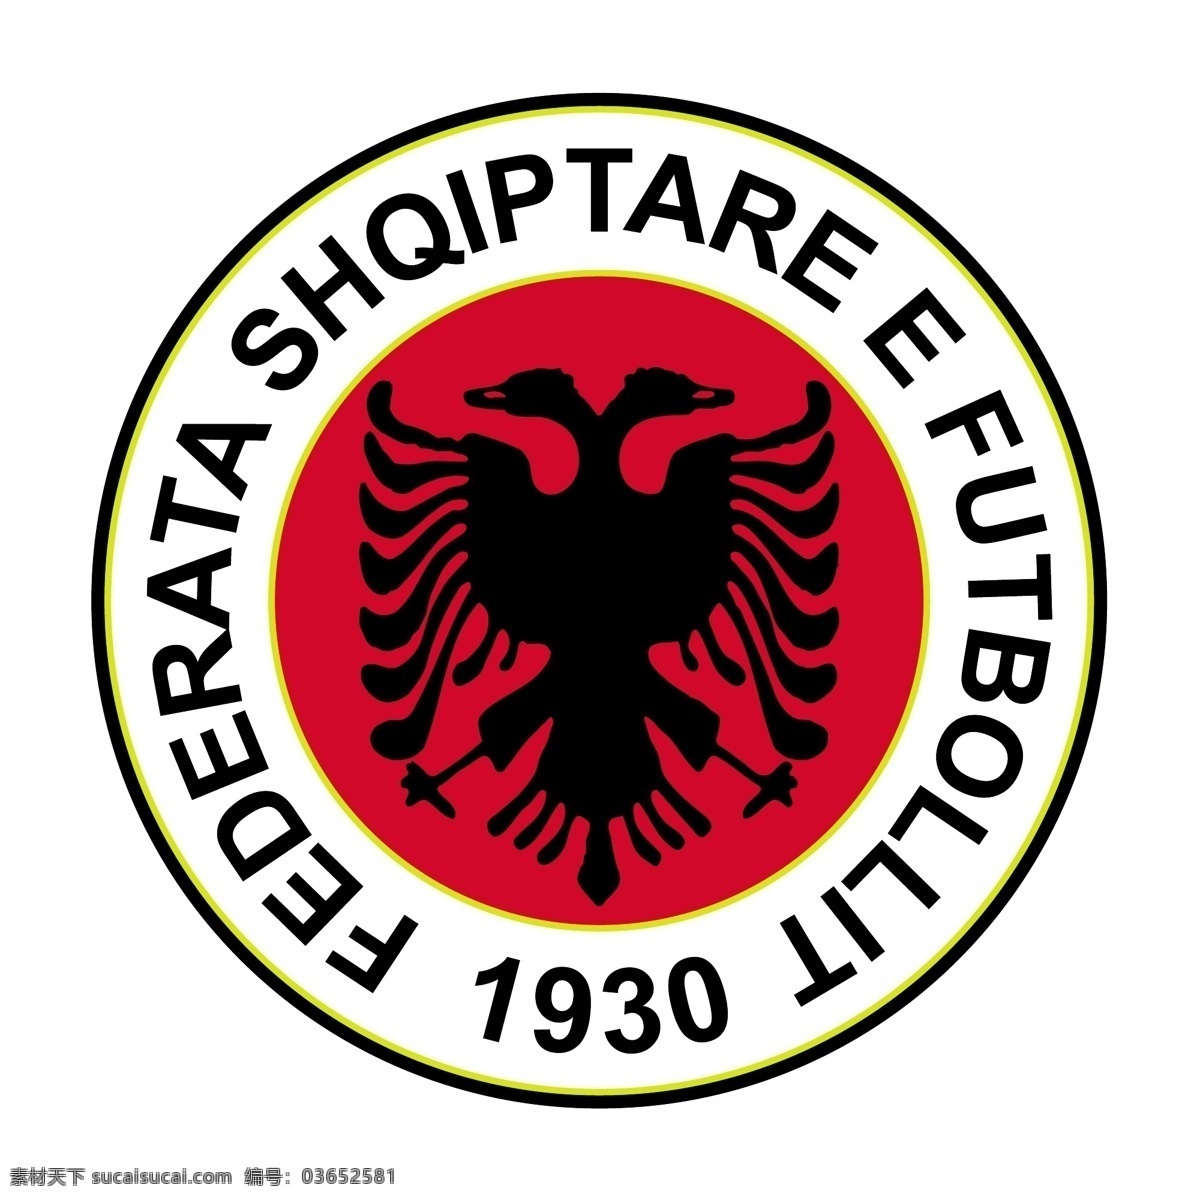 阿尔巴尼亚 足球 协会 自由 标志 标识 psd源文件 logo设计